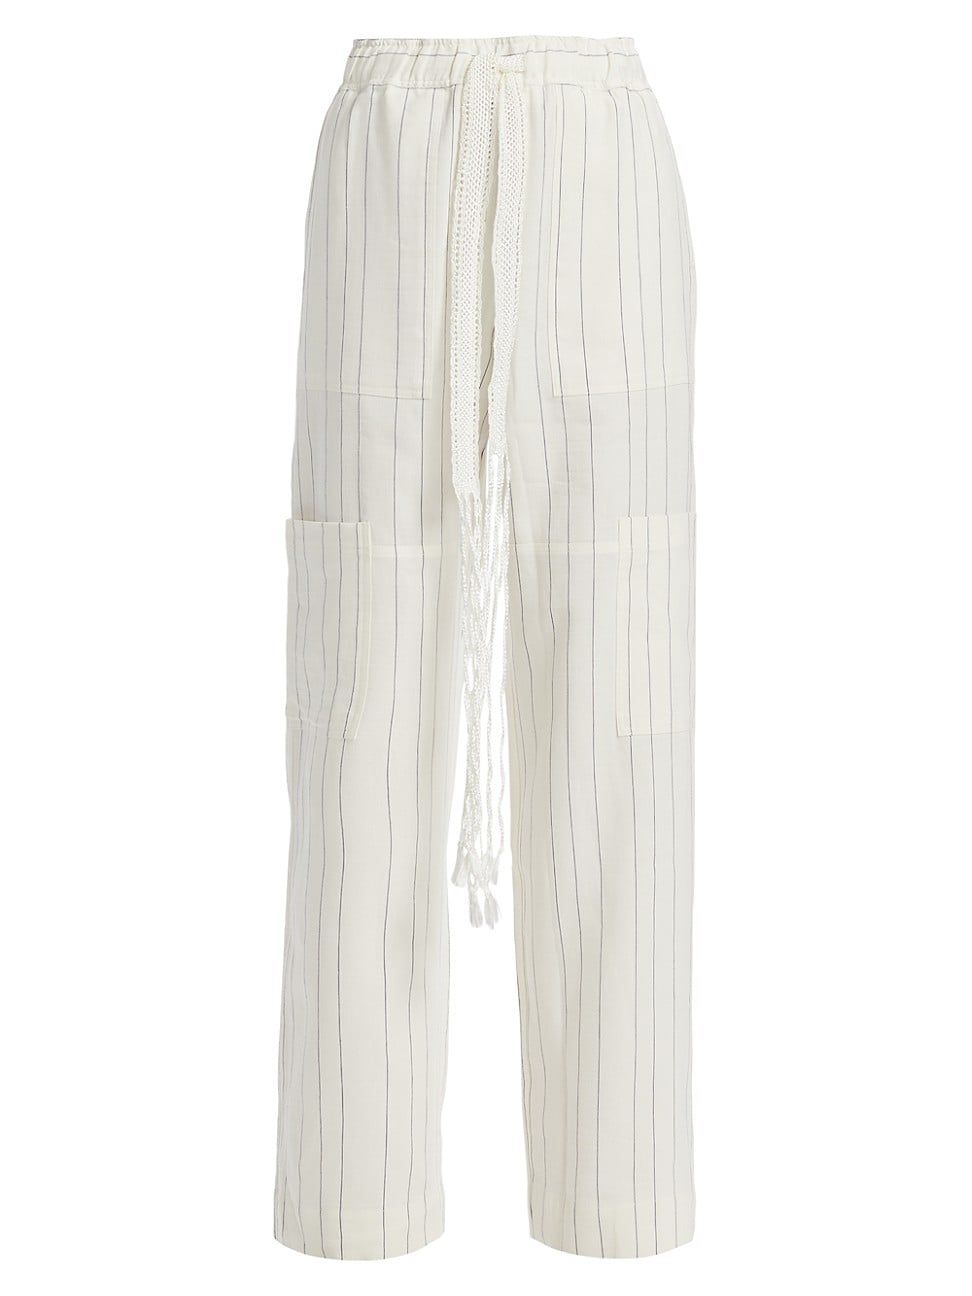 Women's Eternal Pinstripe Trousers - Ivory - Size 6 | Saks Fifth Avenue